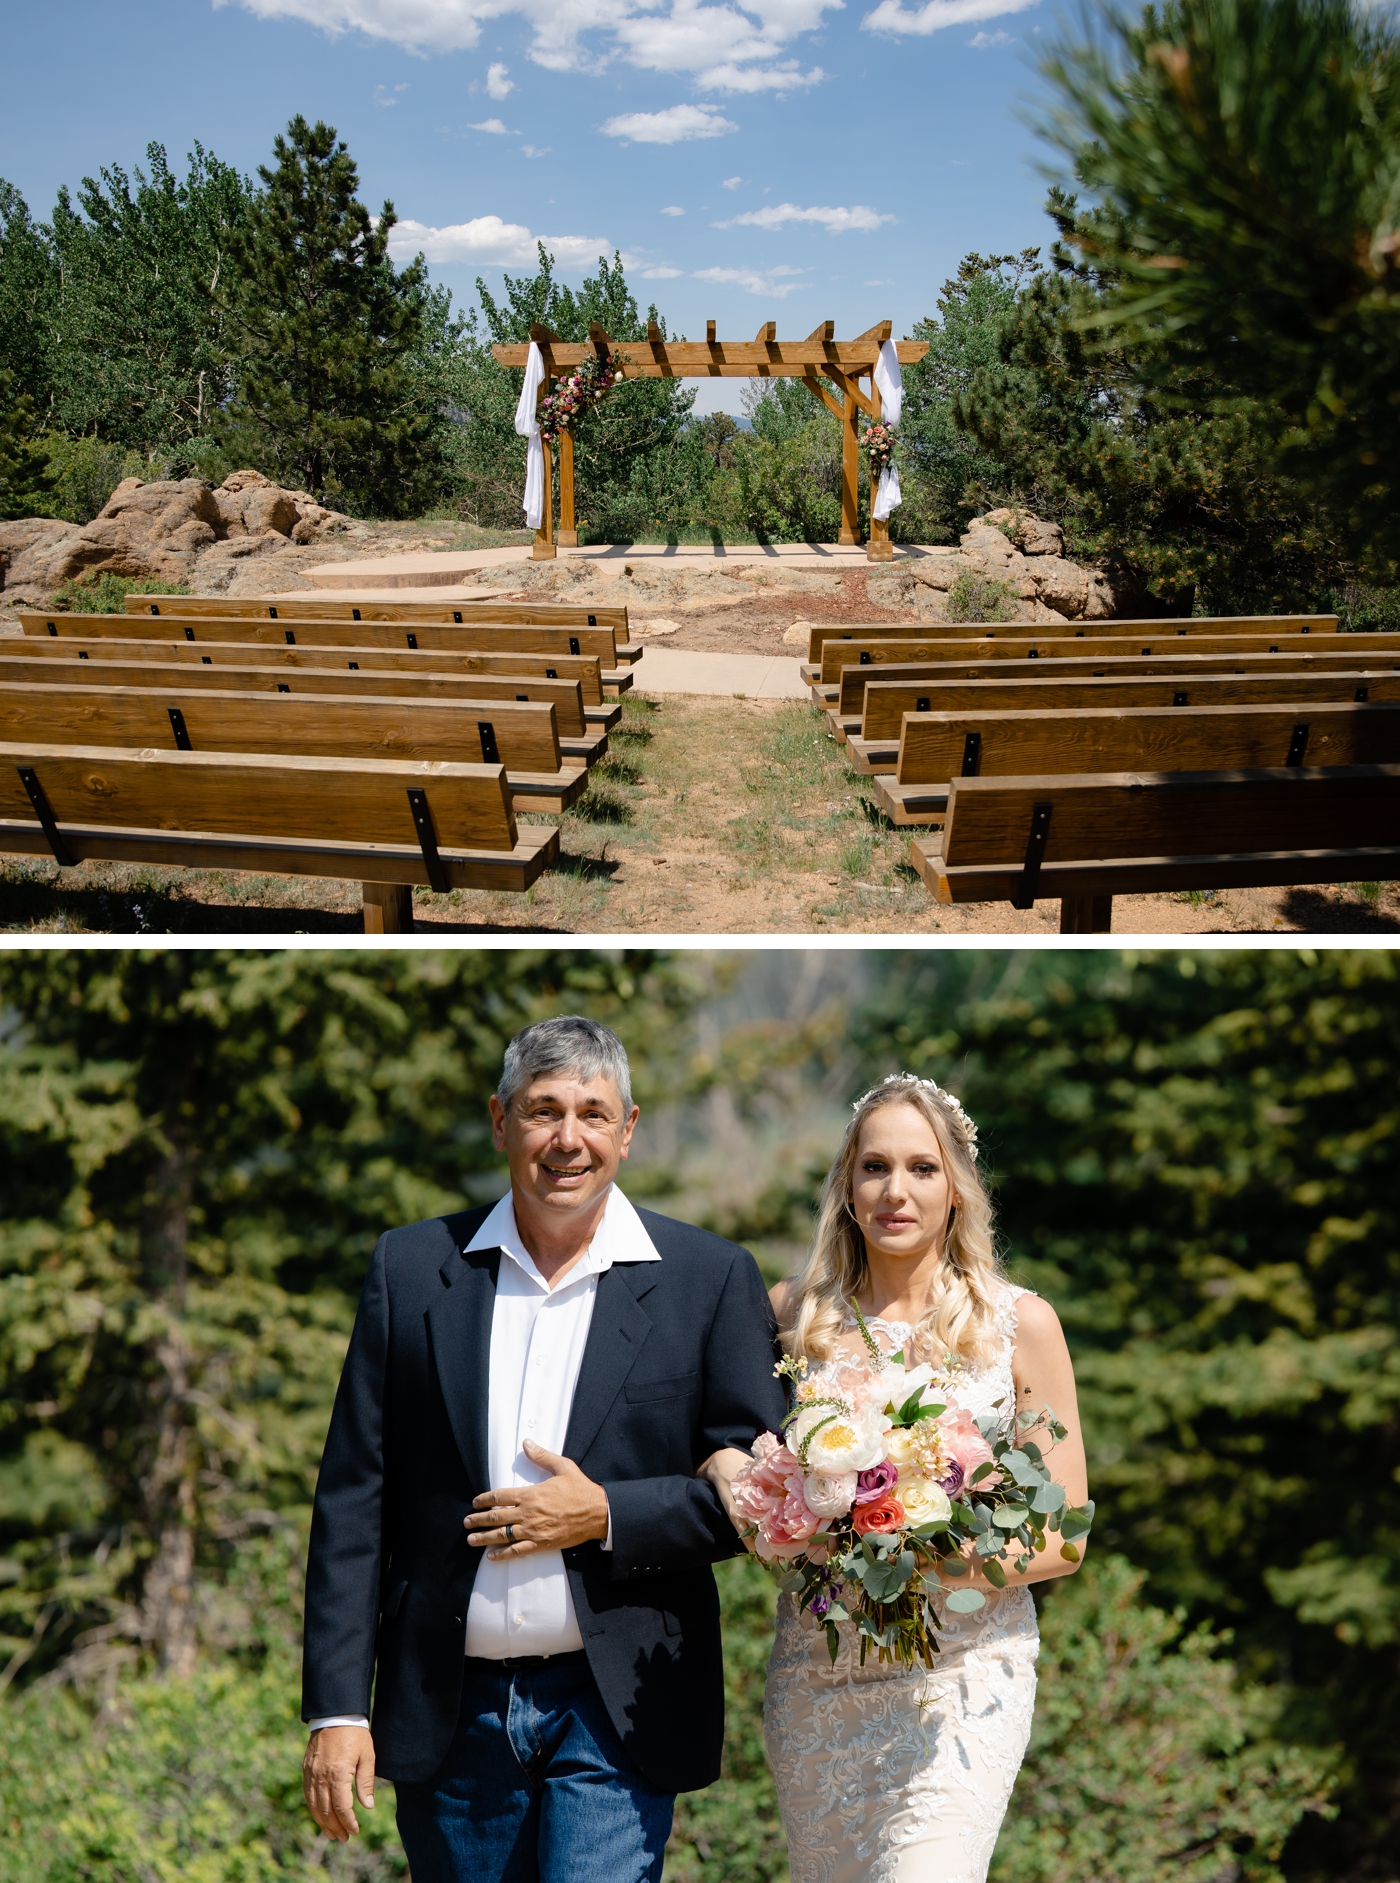 Wedding ceremony at Taharaa Mountain Lodge